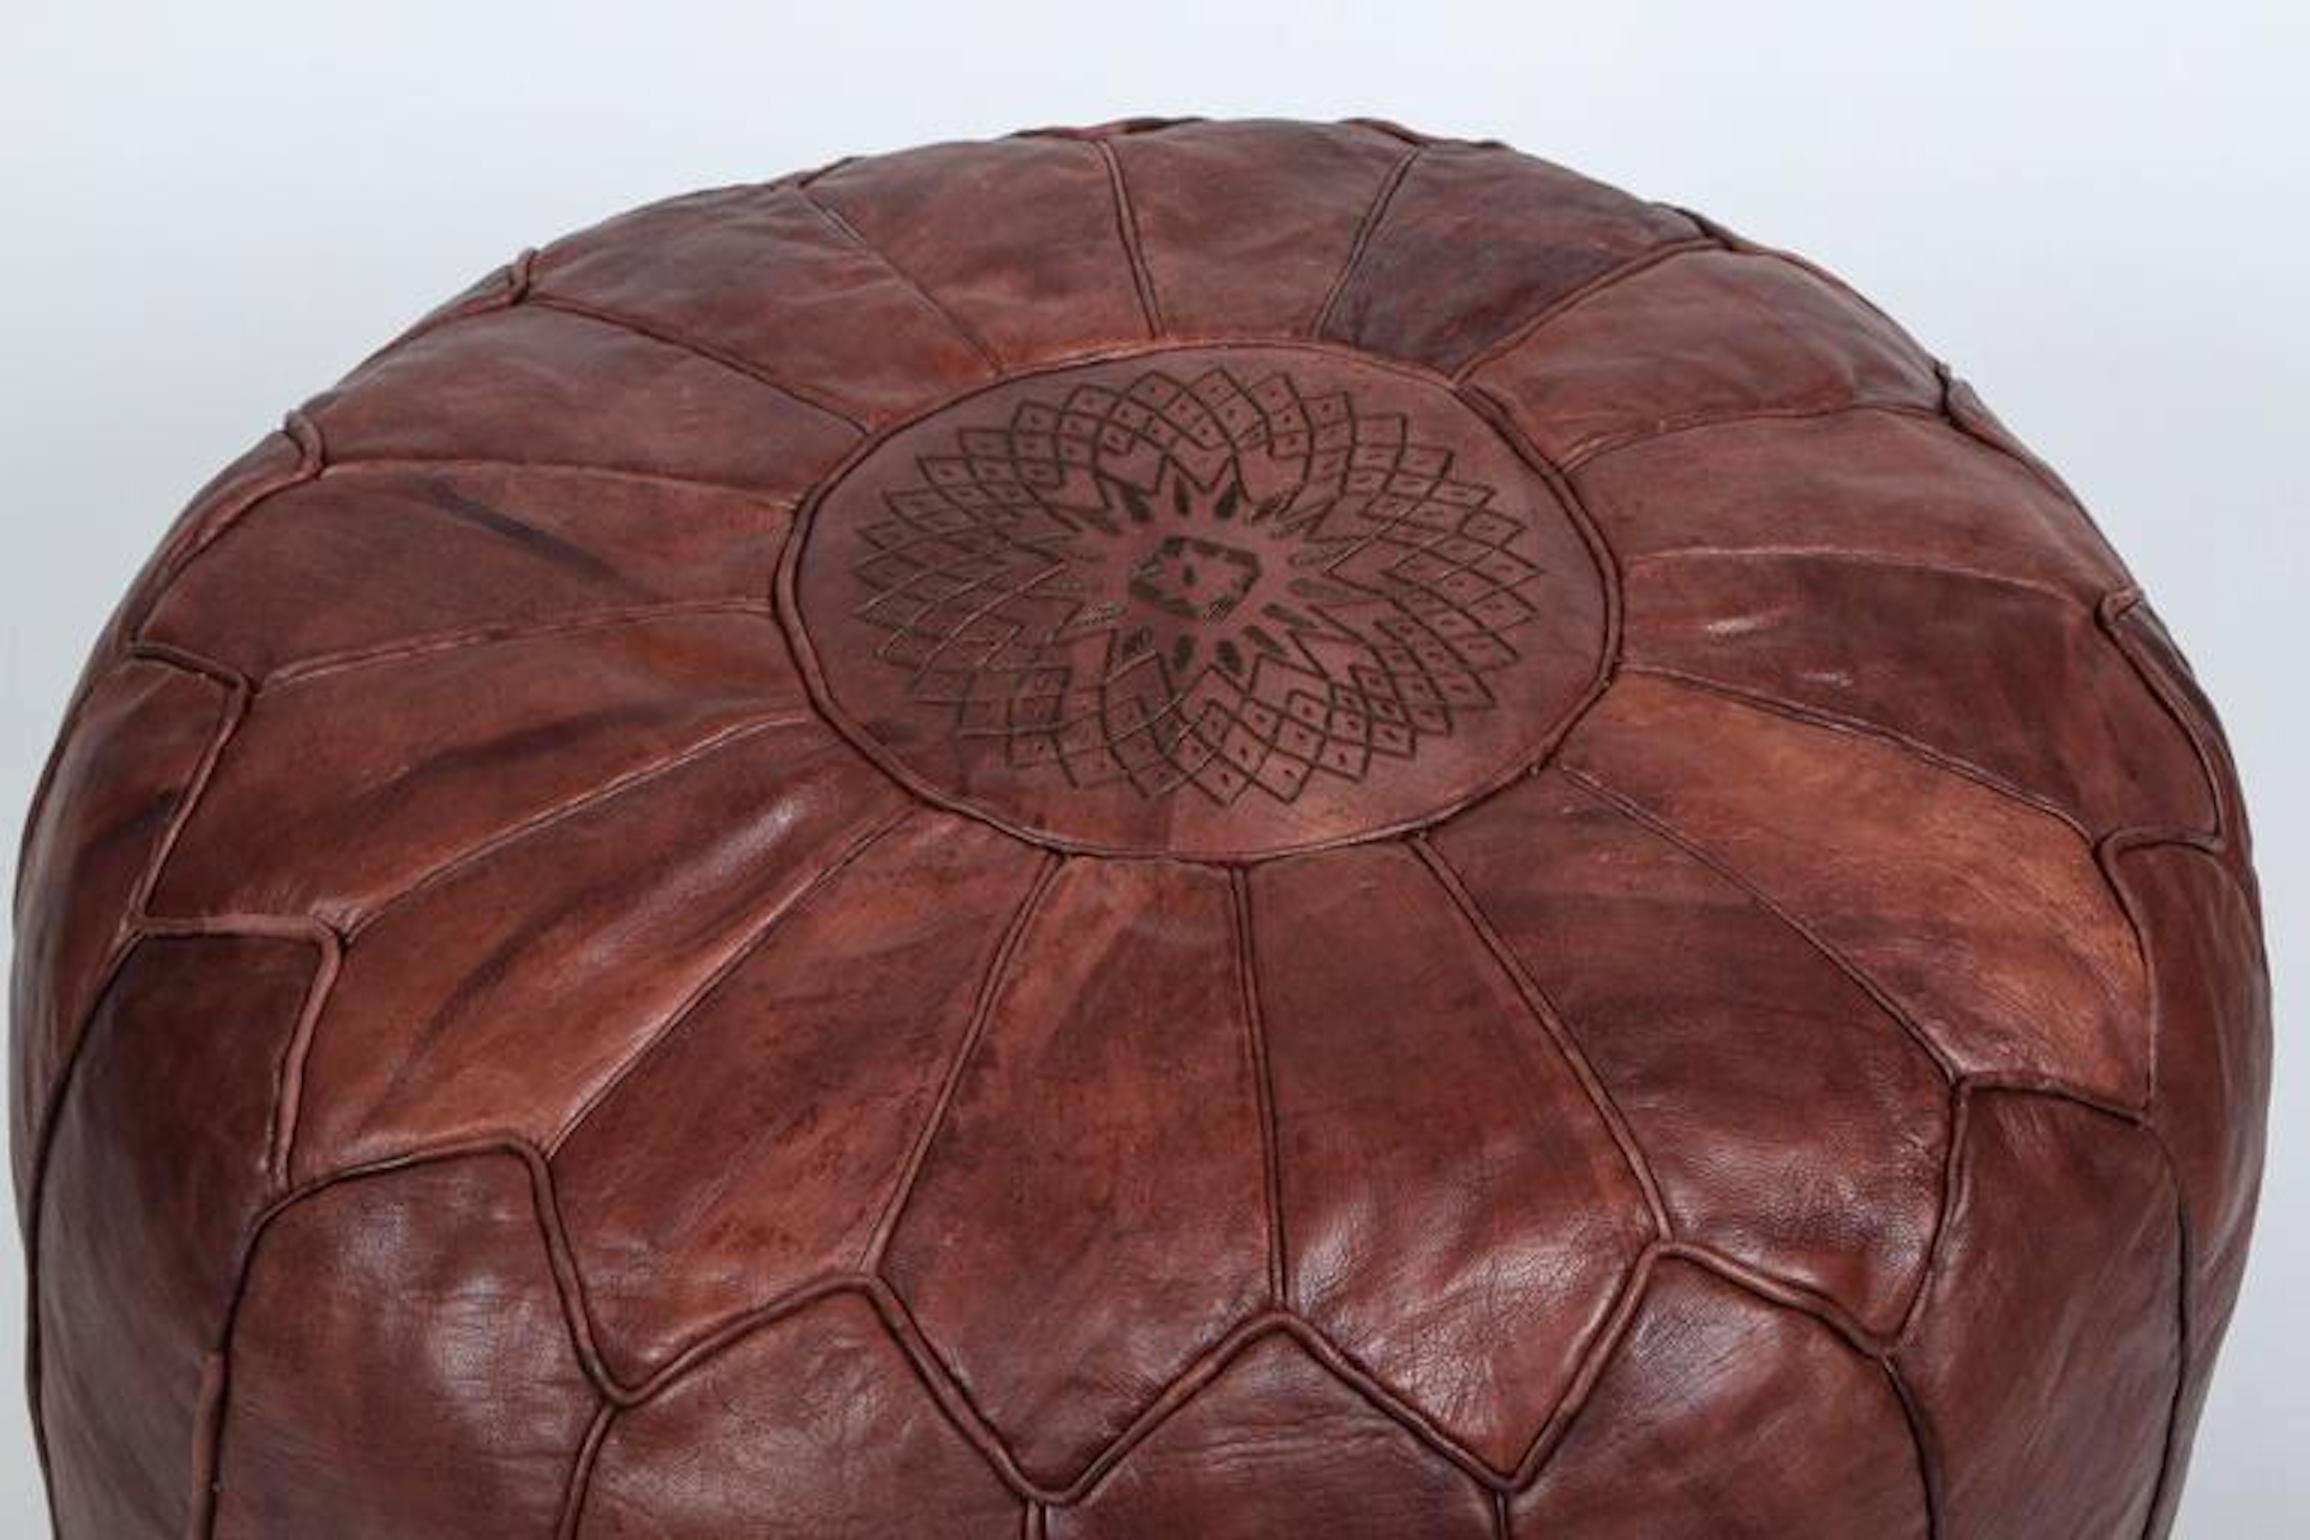 Großer runder marokkanischer Vintage-Lederhocker, handgefertigt aus schokoladenbraunem Kamelleder.
Hocker Ottomane aus handgearbeitetem Leder und auf der Oberseite mit dem maurischen Stern bestickt.
Handgefertigt von marokkanischen Kunsthandwerkern